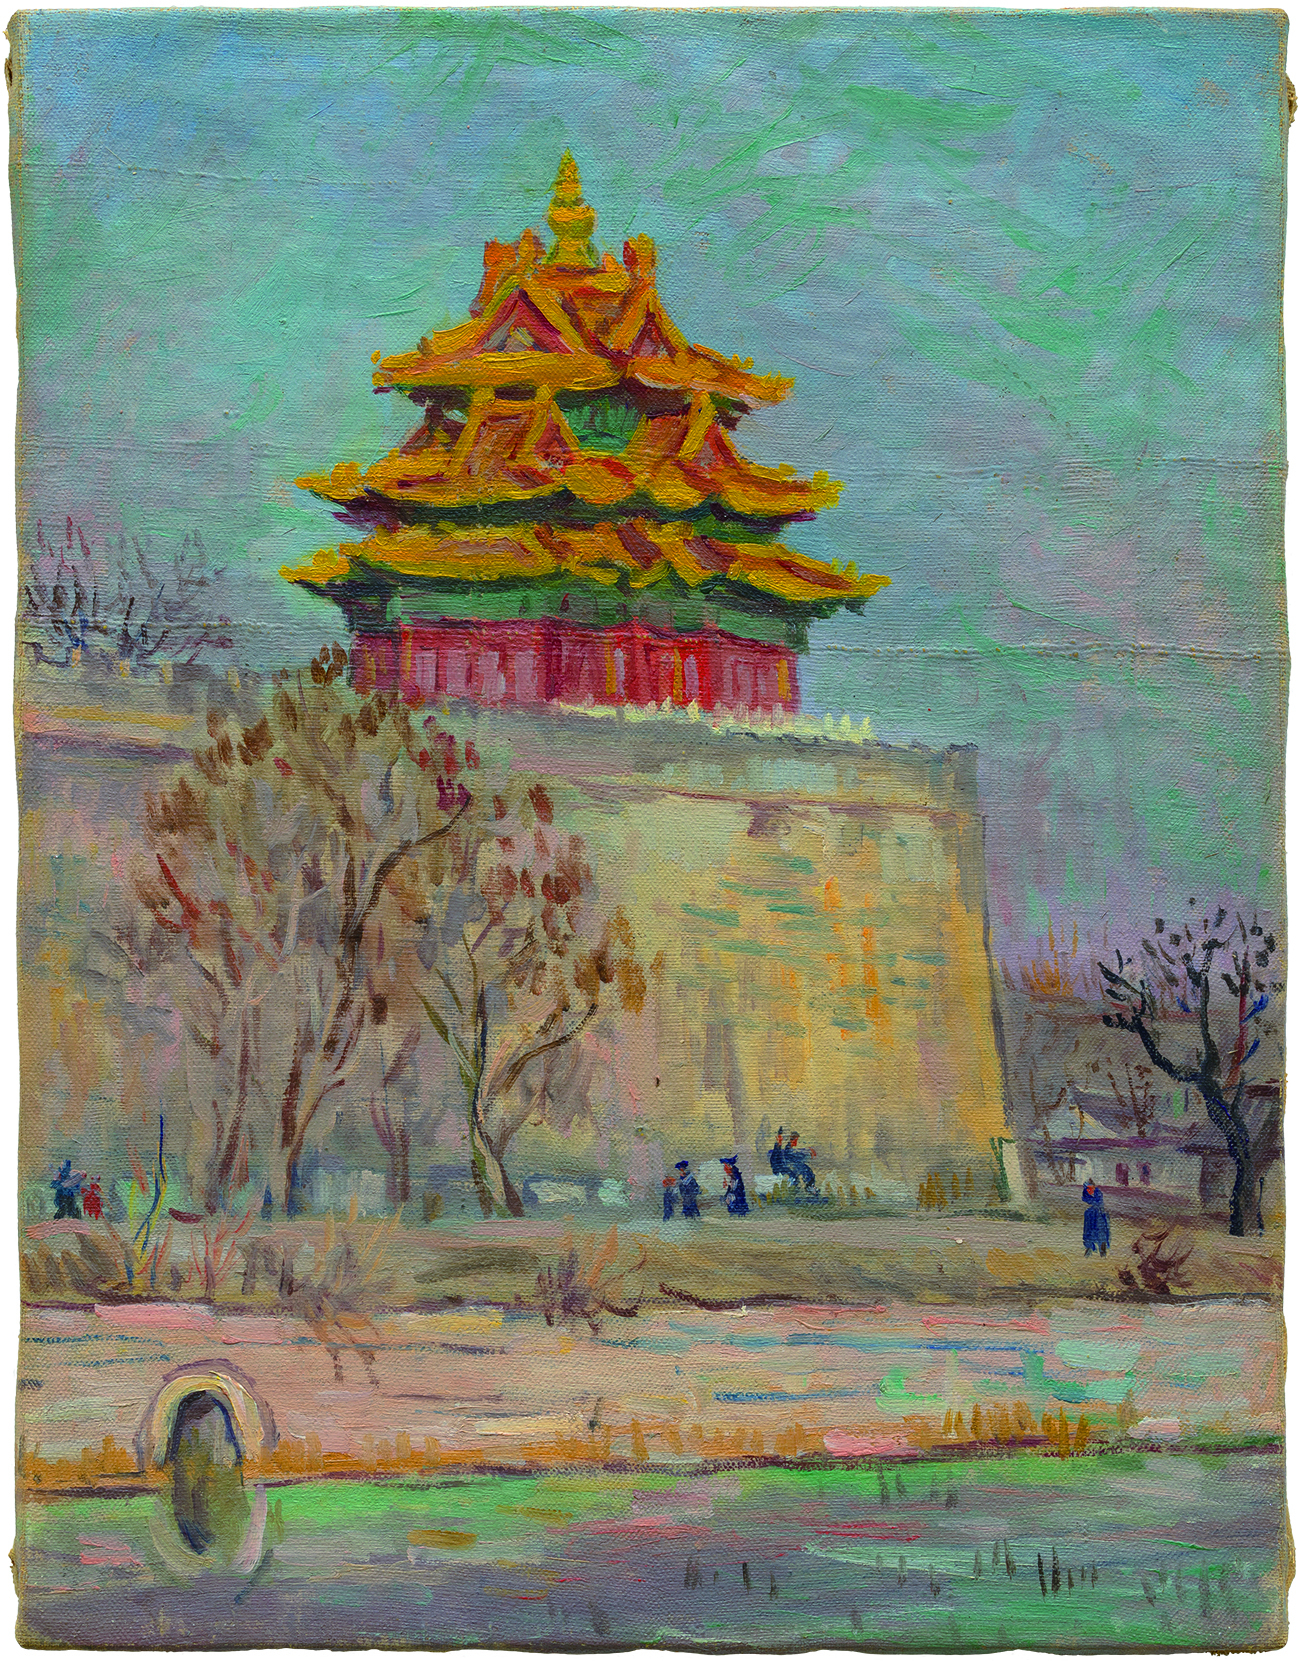 임군홍, 각루(角樓),40x31cm,Oil on canvas,1940년대